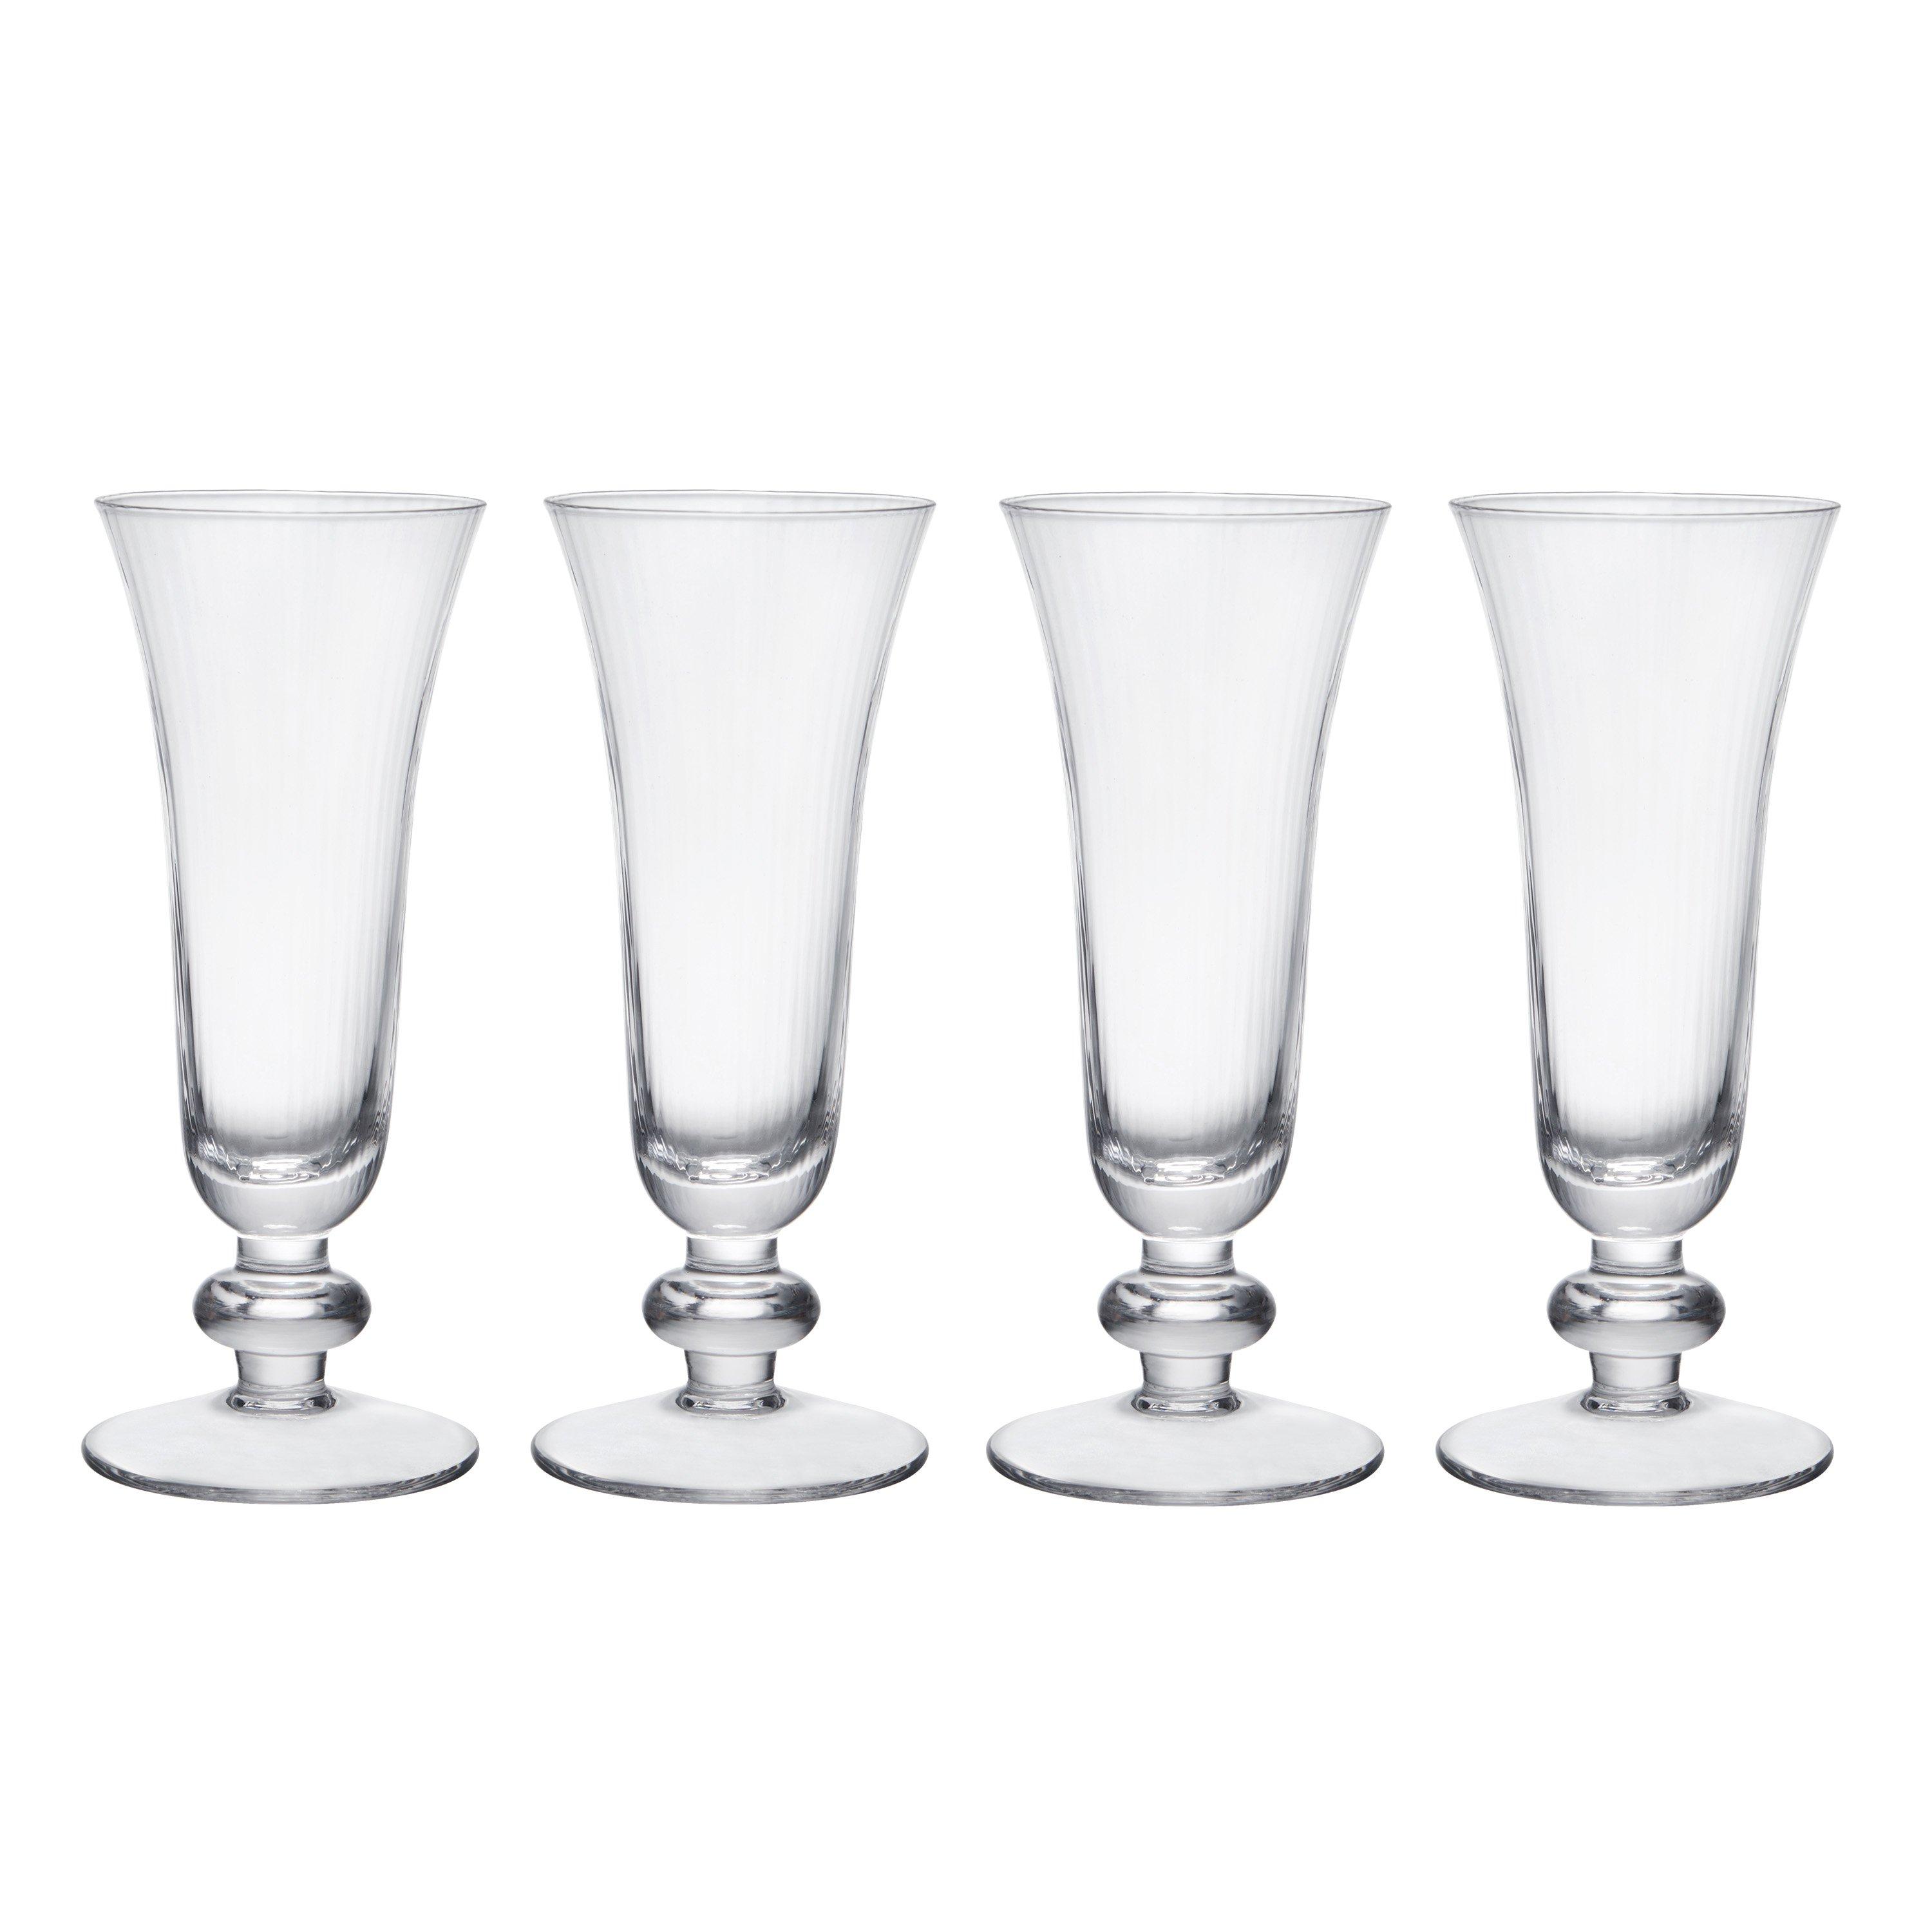 Salerno Crystal Champagne Flute Glasses, Set of 4, 170ml